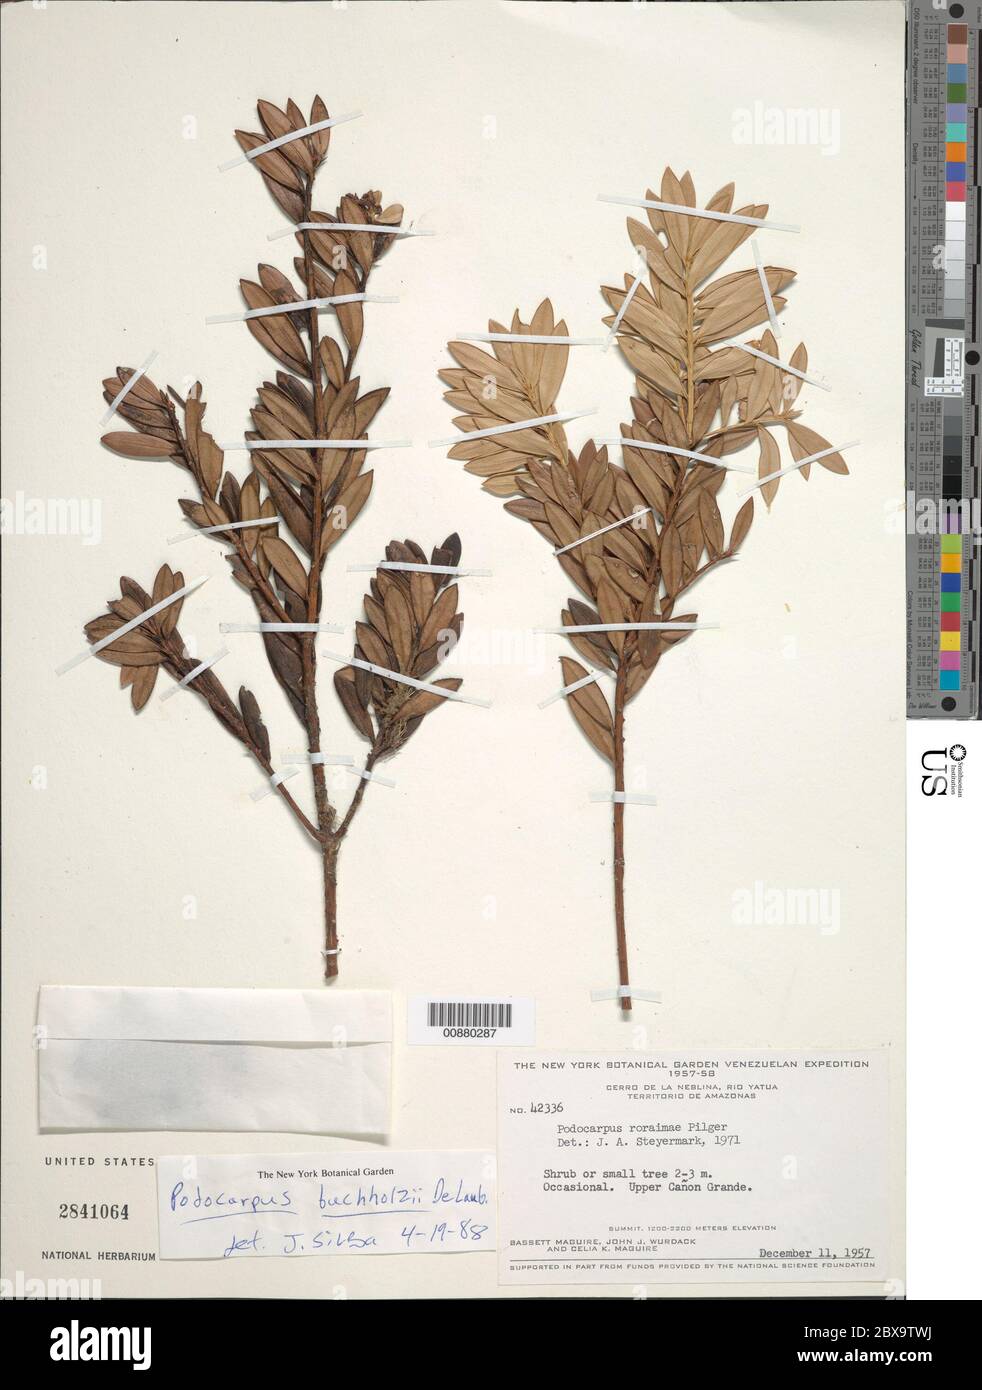 Podocarpus buchholzii de Laub Podocarpus buchholzii de Laub. Stock Photo